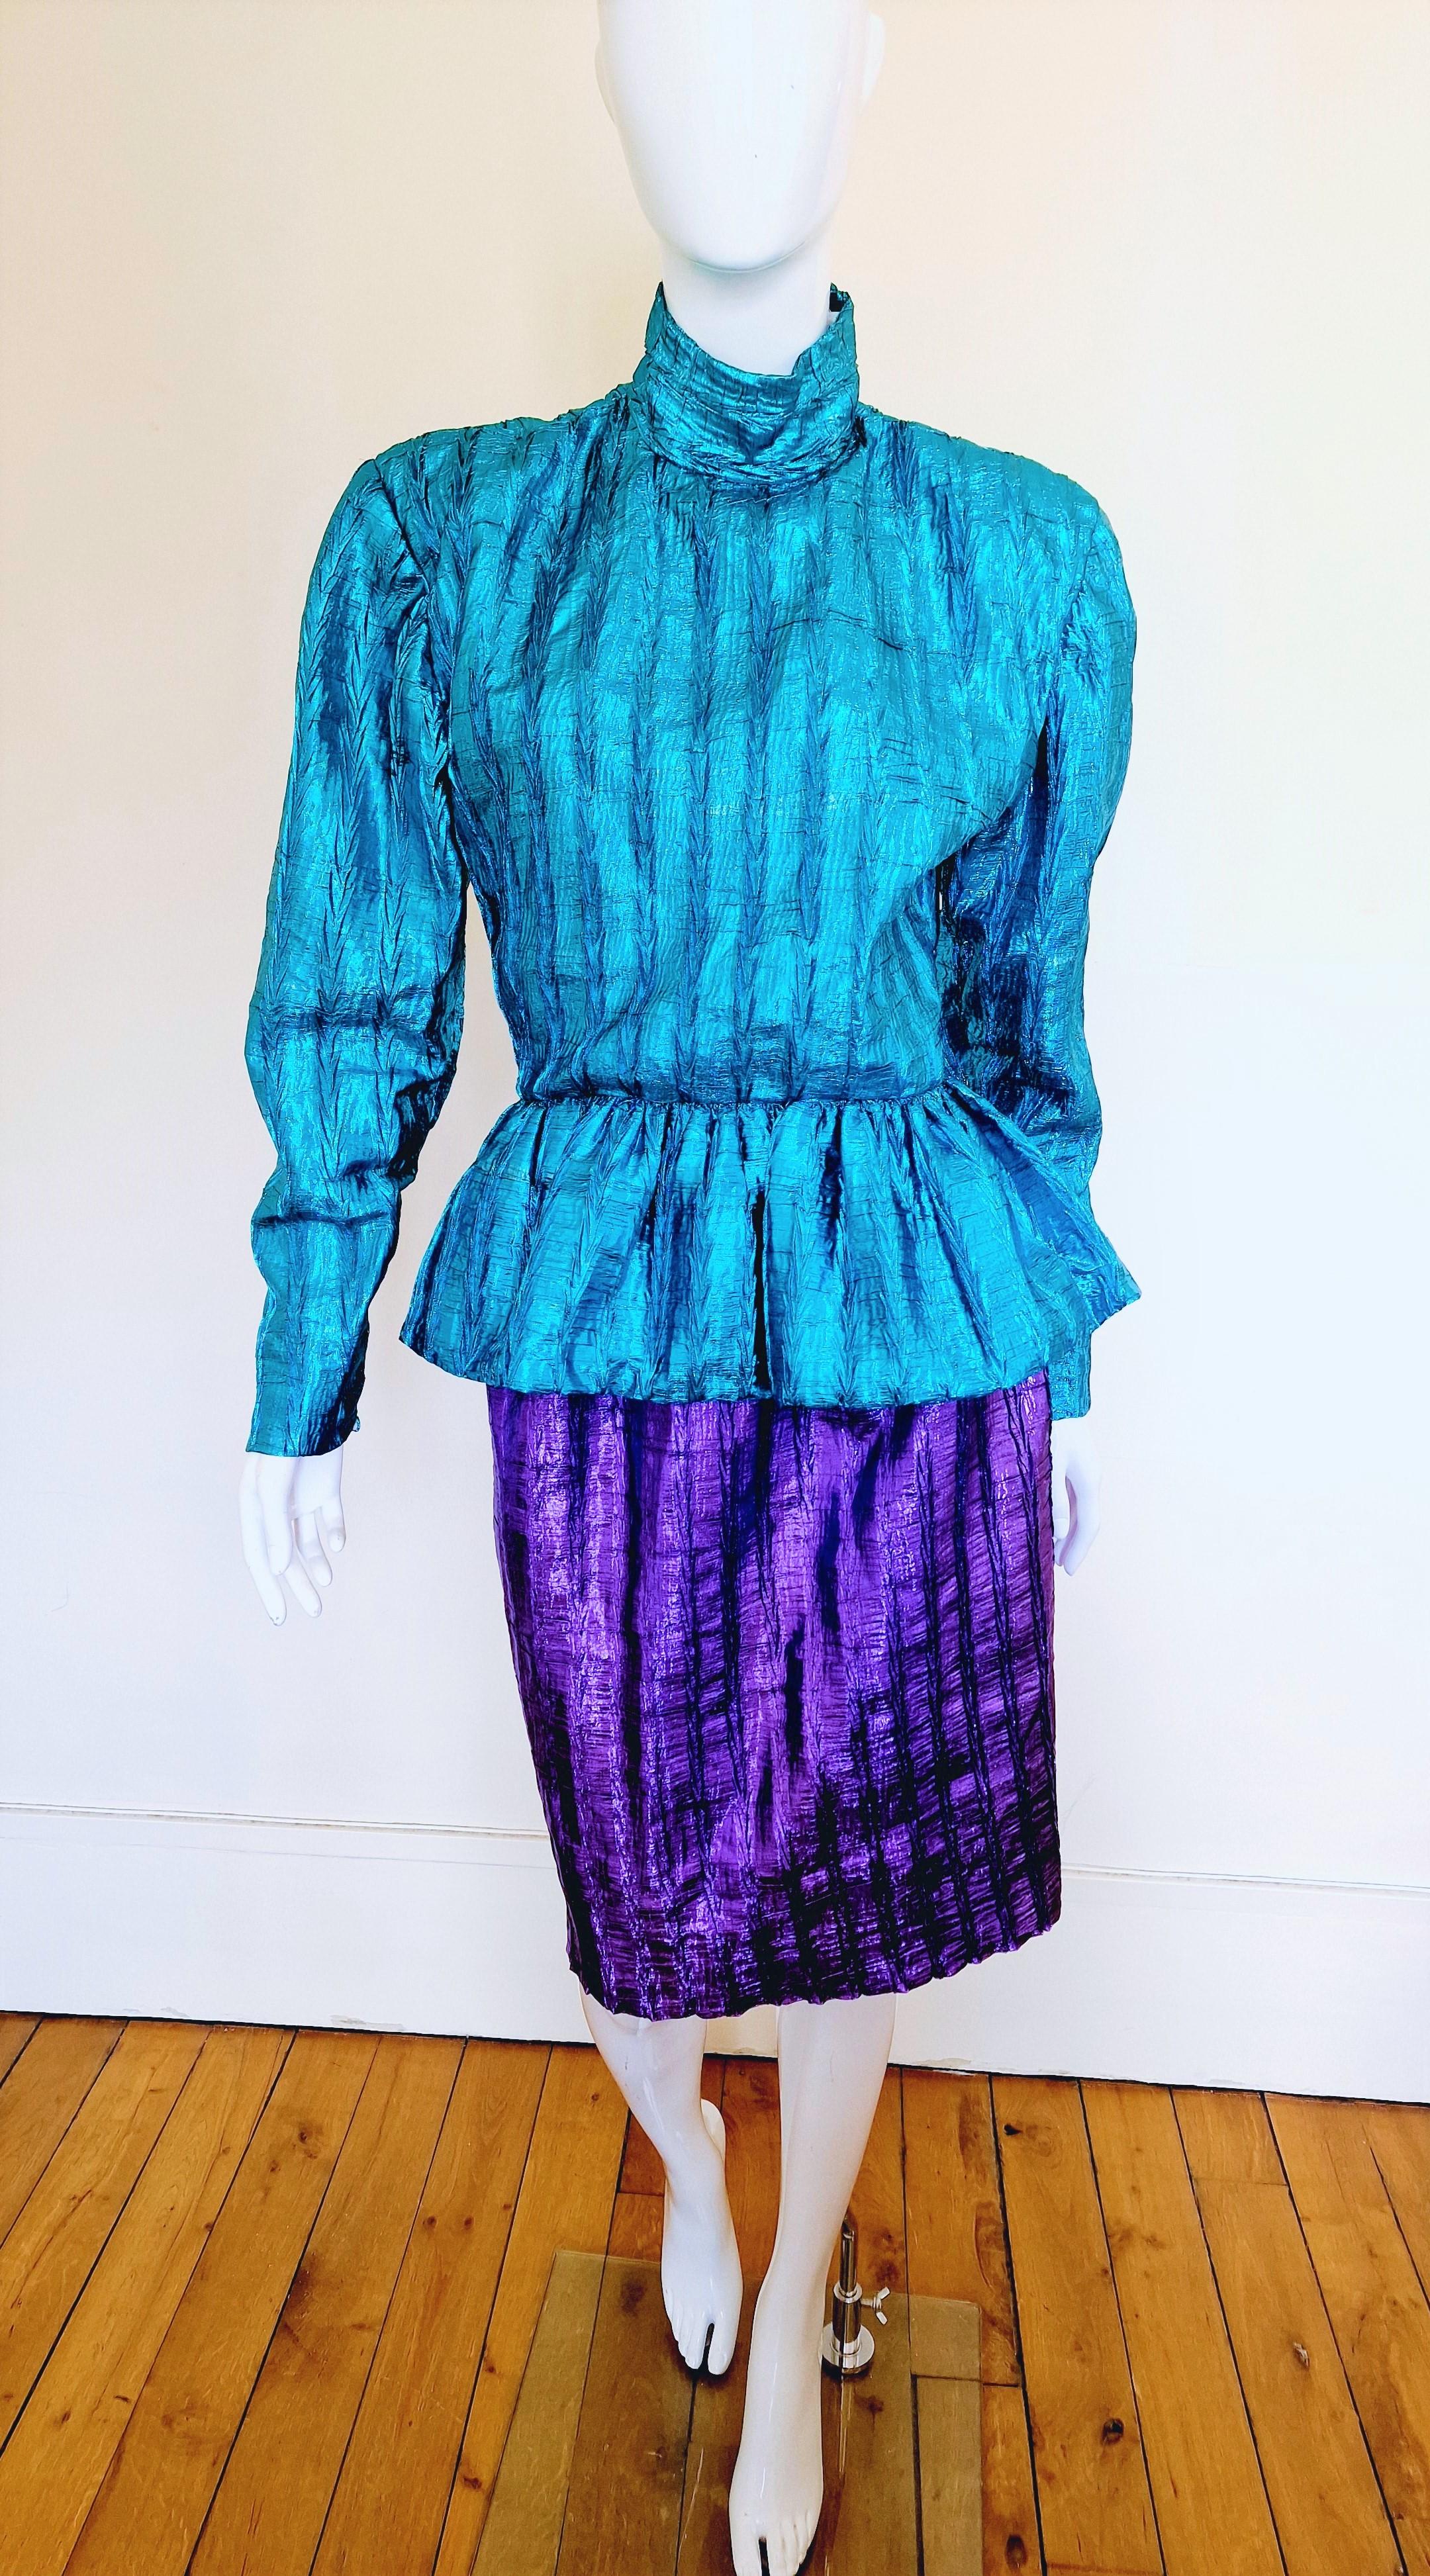 Ensemble Christian Dior des années 70 !
Top + jupe !
Avec des pad.
Des couleurs vives et brillantes !

Très bon état ! Le dessus a des décolorations, veuillez regarder les dernières photos ! Toujours merveilleux !

TAILLE
Convient de petit à